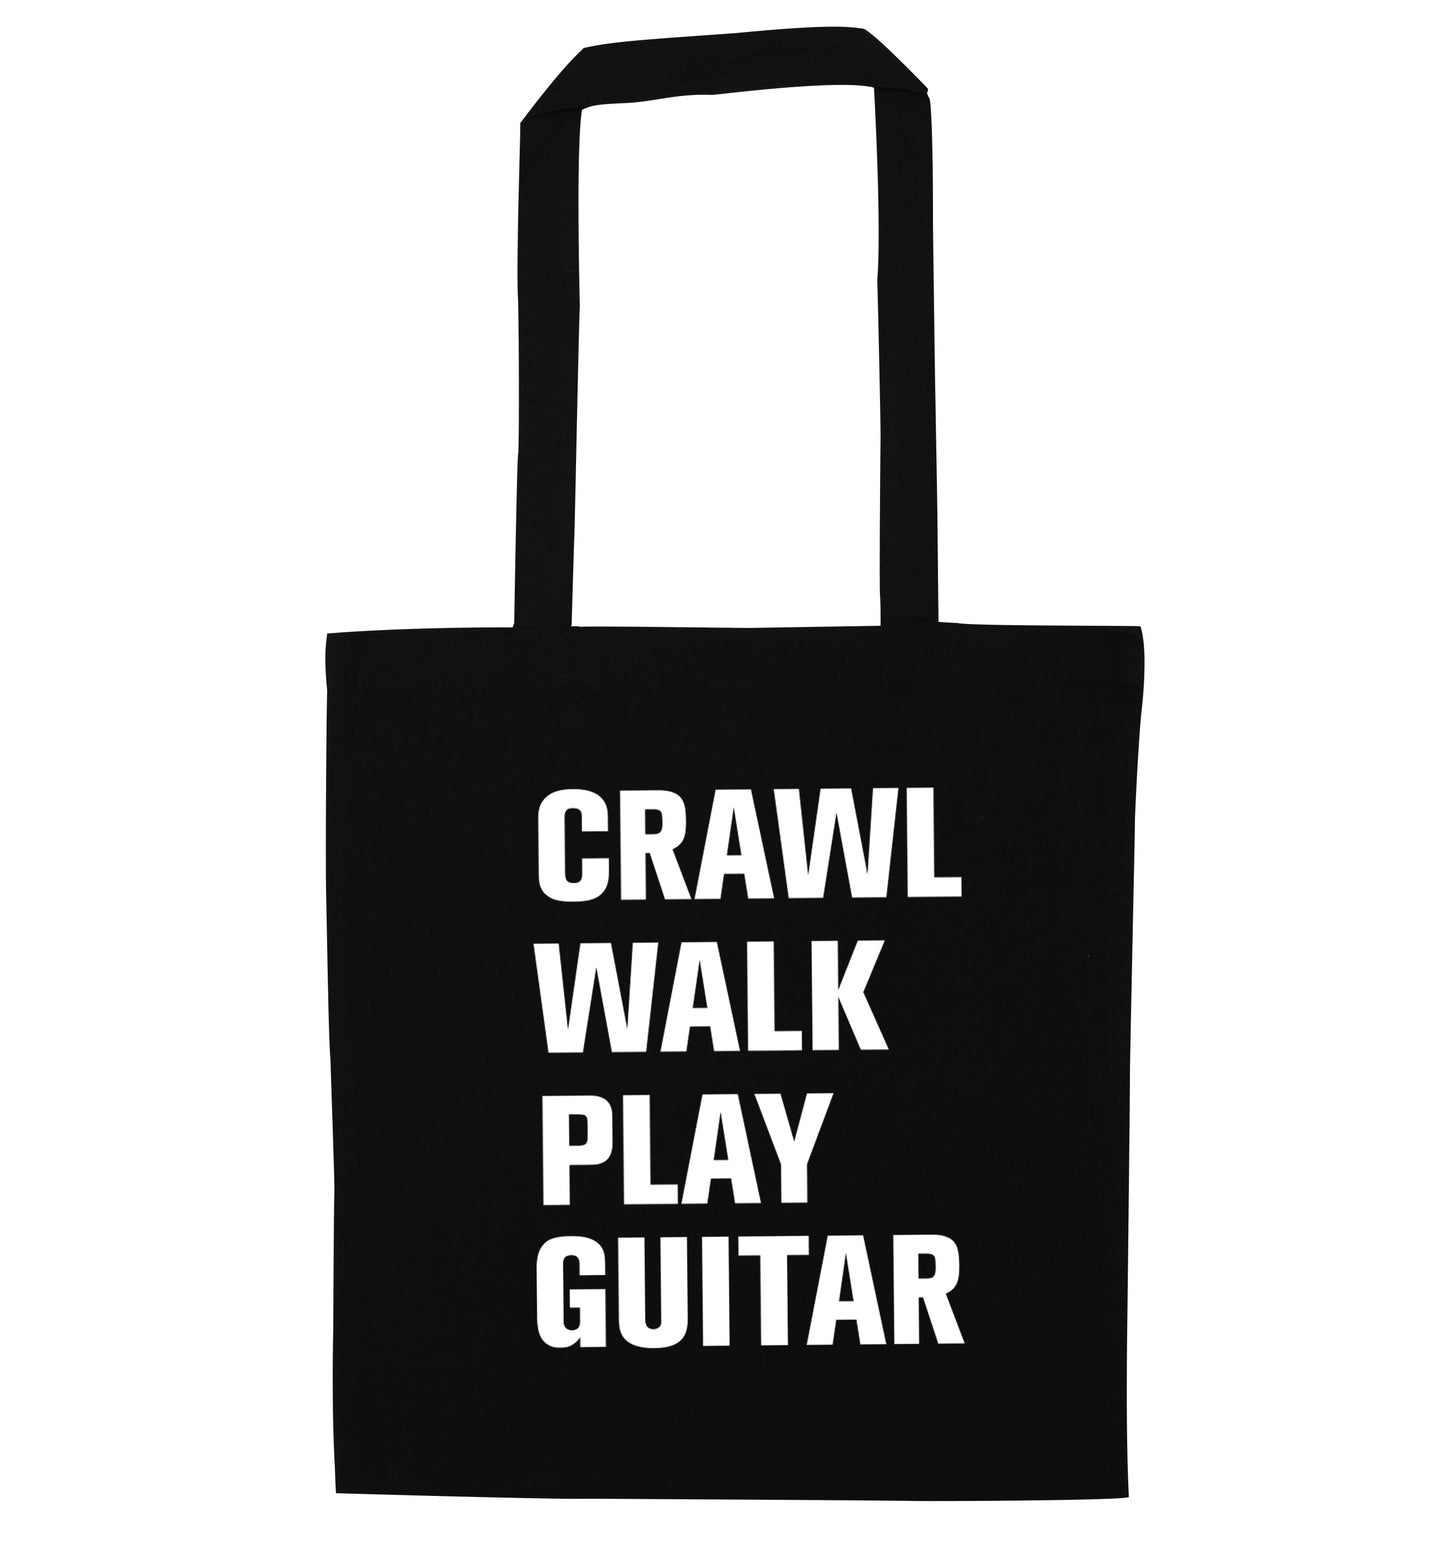 Crawl walk play guitar black tote bag